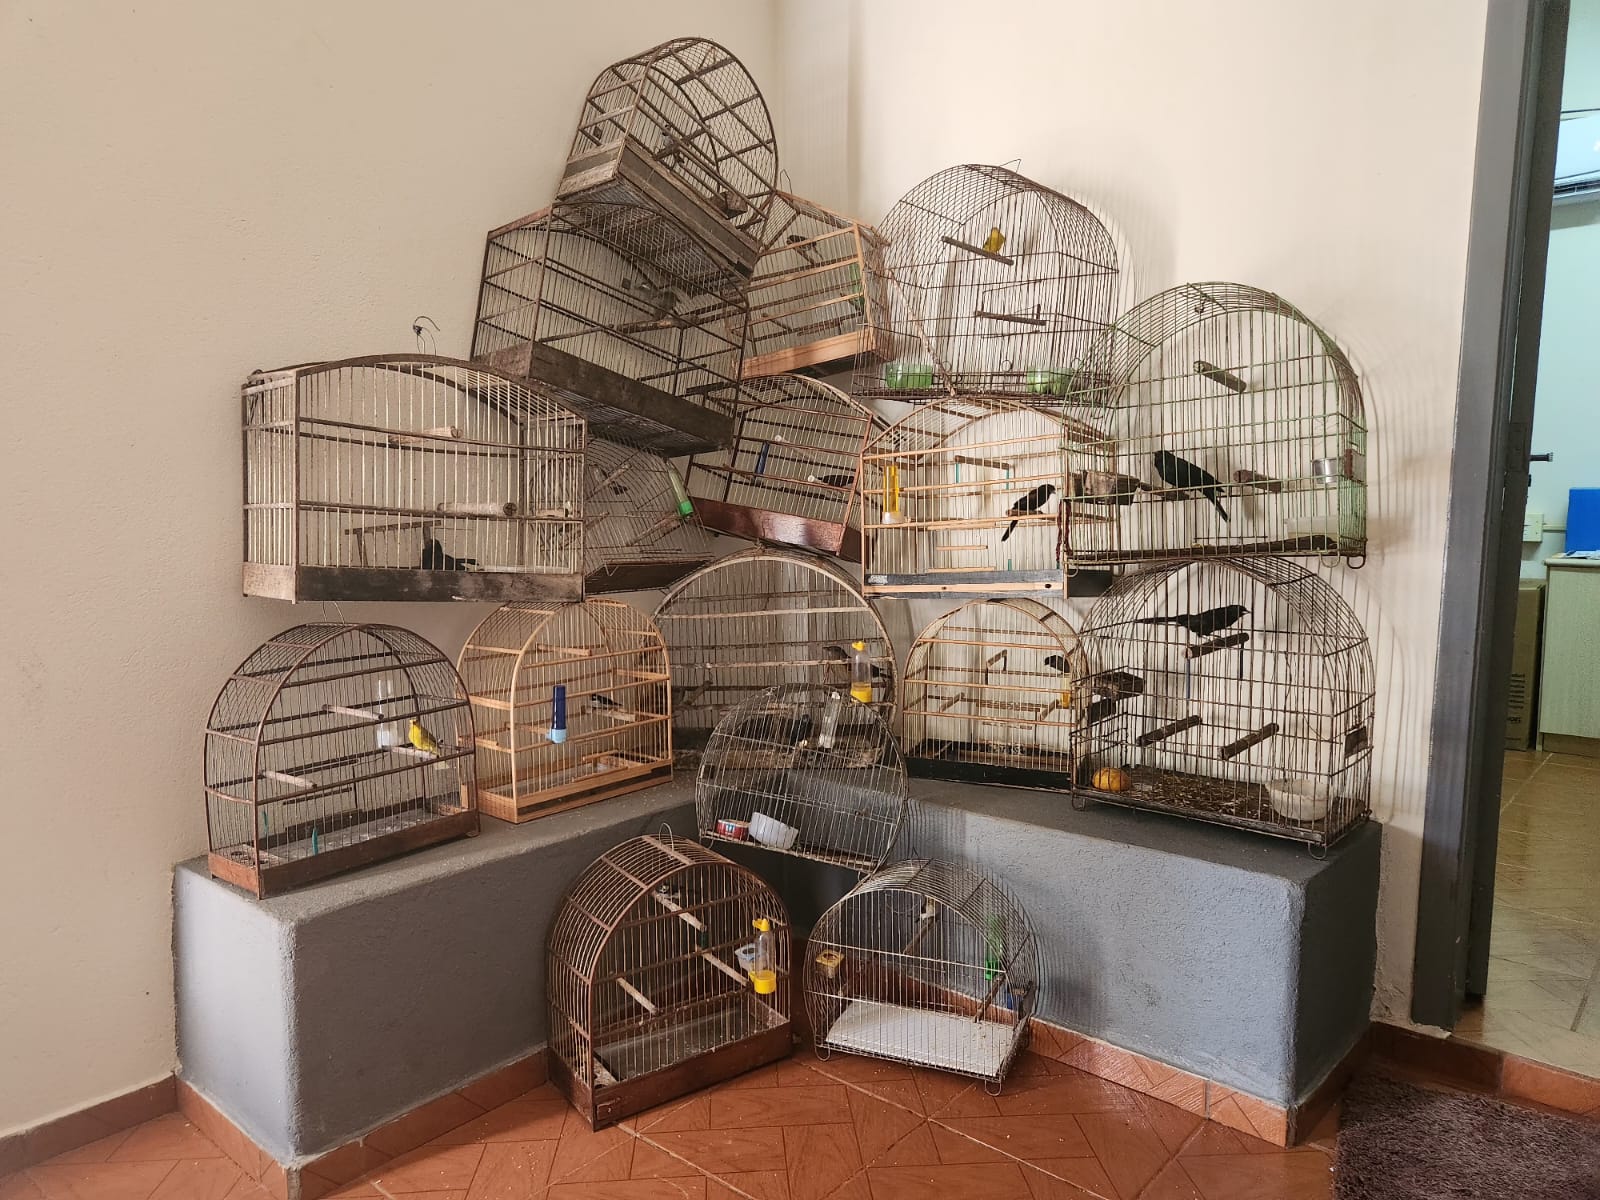 Quatro suspeitos de manter aves silvestres em cativeiro são presos em Moreira Sales 